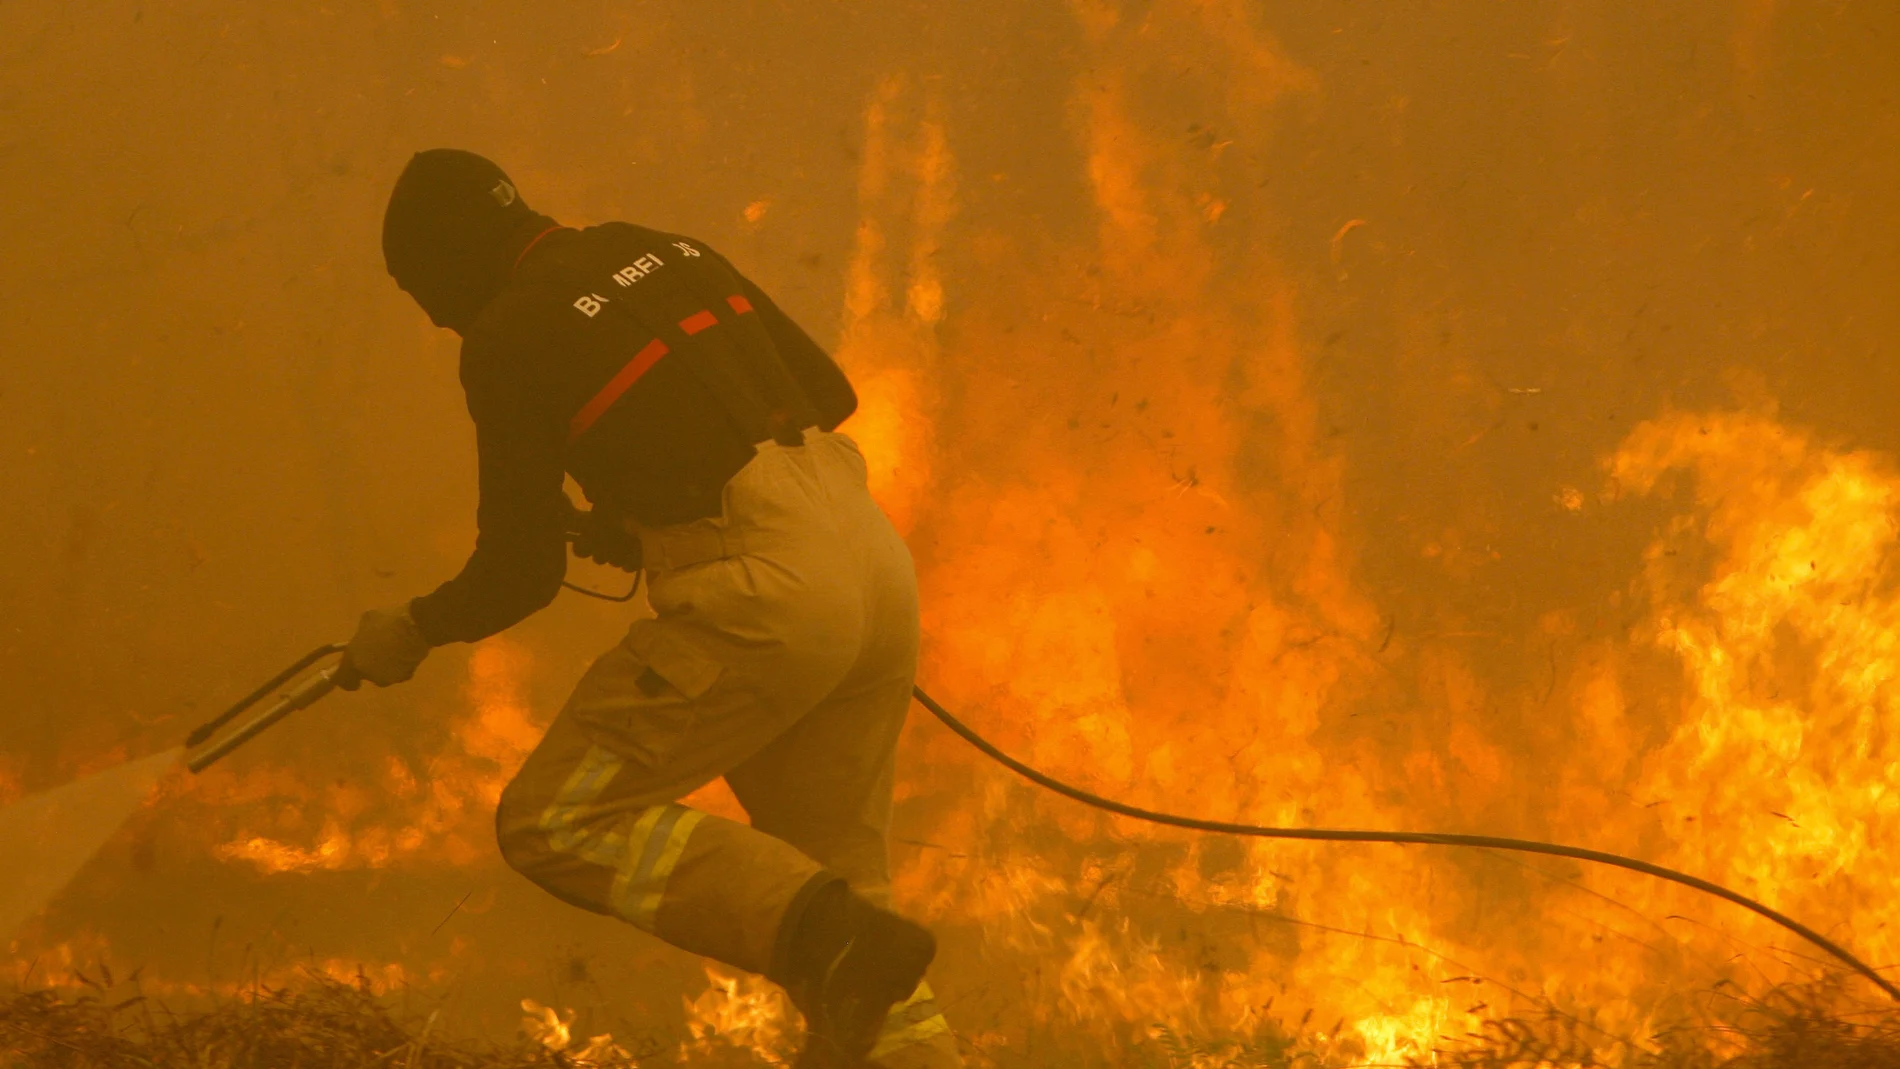  Un operario de los servicios de extinción de incendios trabaja en Vigo